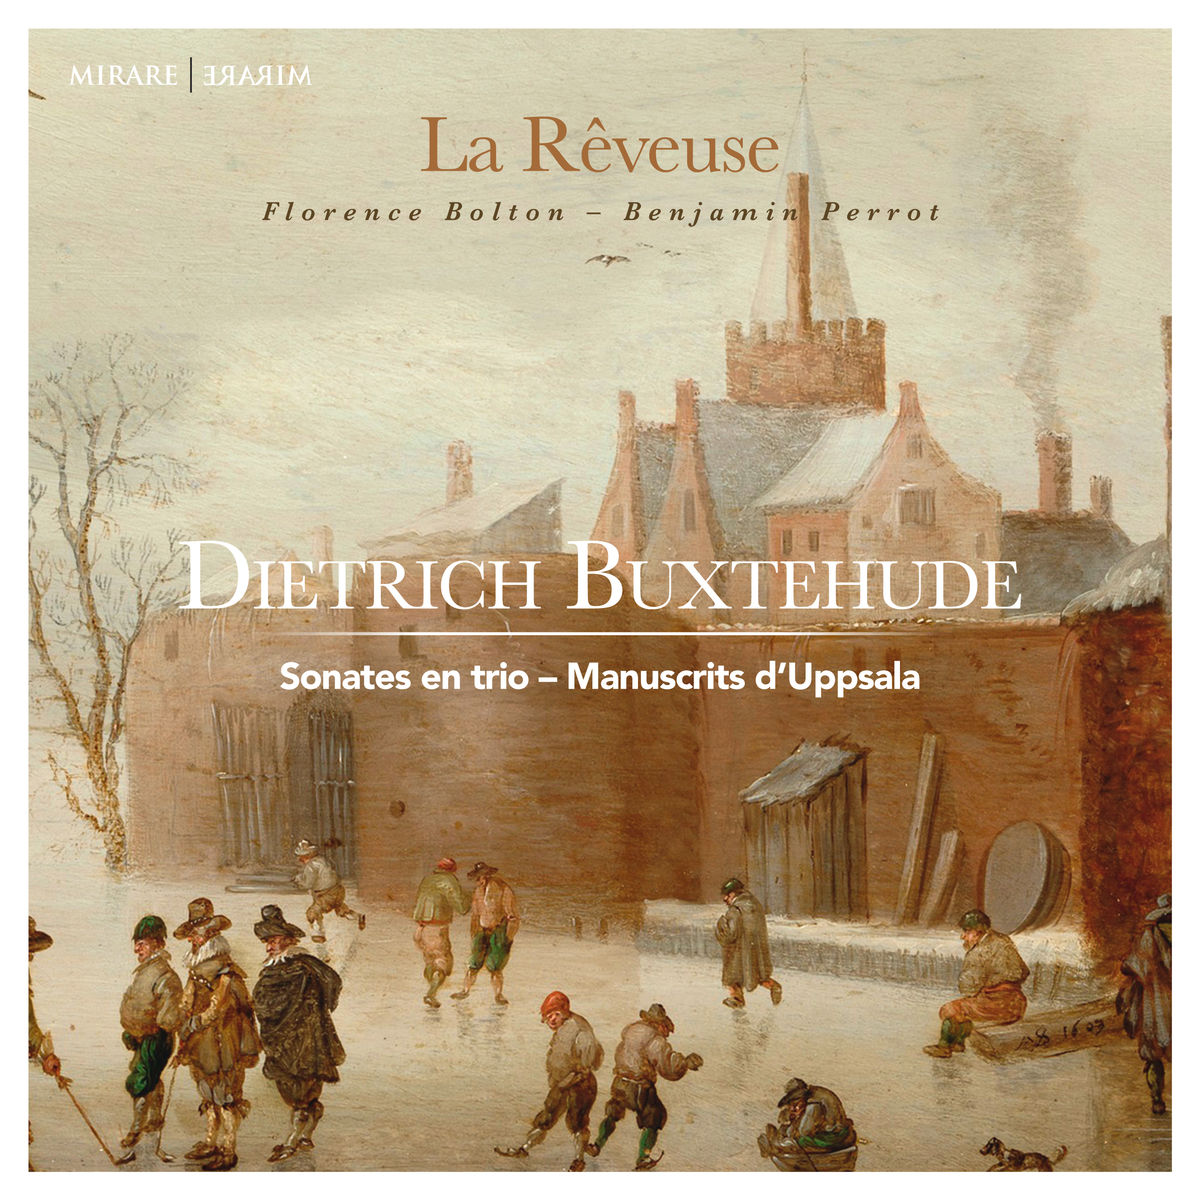 La Reveuse - Dietrich Buxtehude: Sonates en trio - Manuscrits d’Uppsala (2017) [Qobuz FLAC 24bit/96kHz]